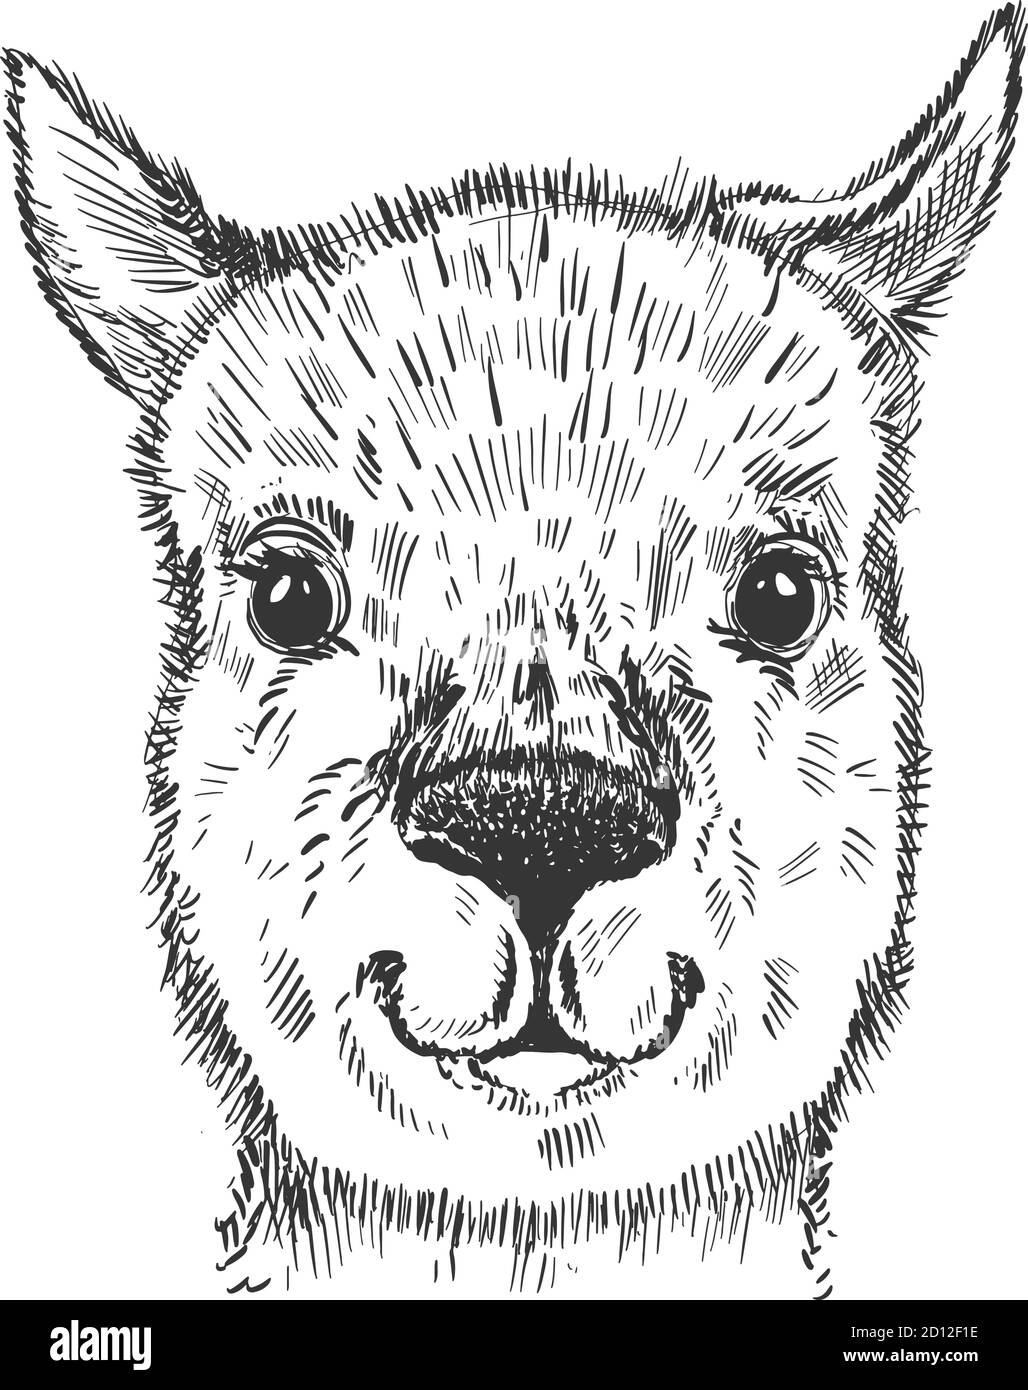 Grafica dello schizzo di lama della testa animale. Colore monocromatico carino, isolato su sfondo bianco. Illustrazione Vettoriale